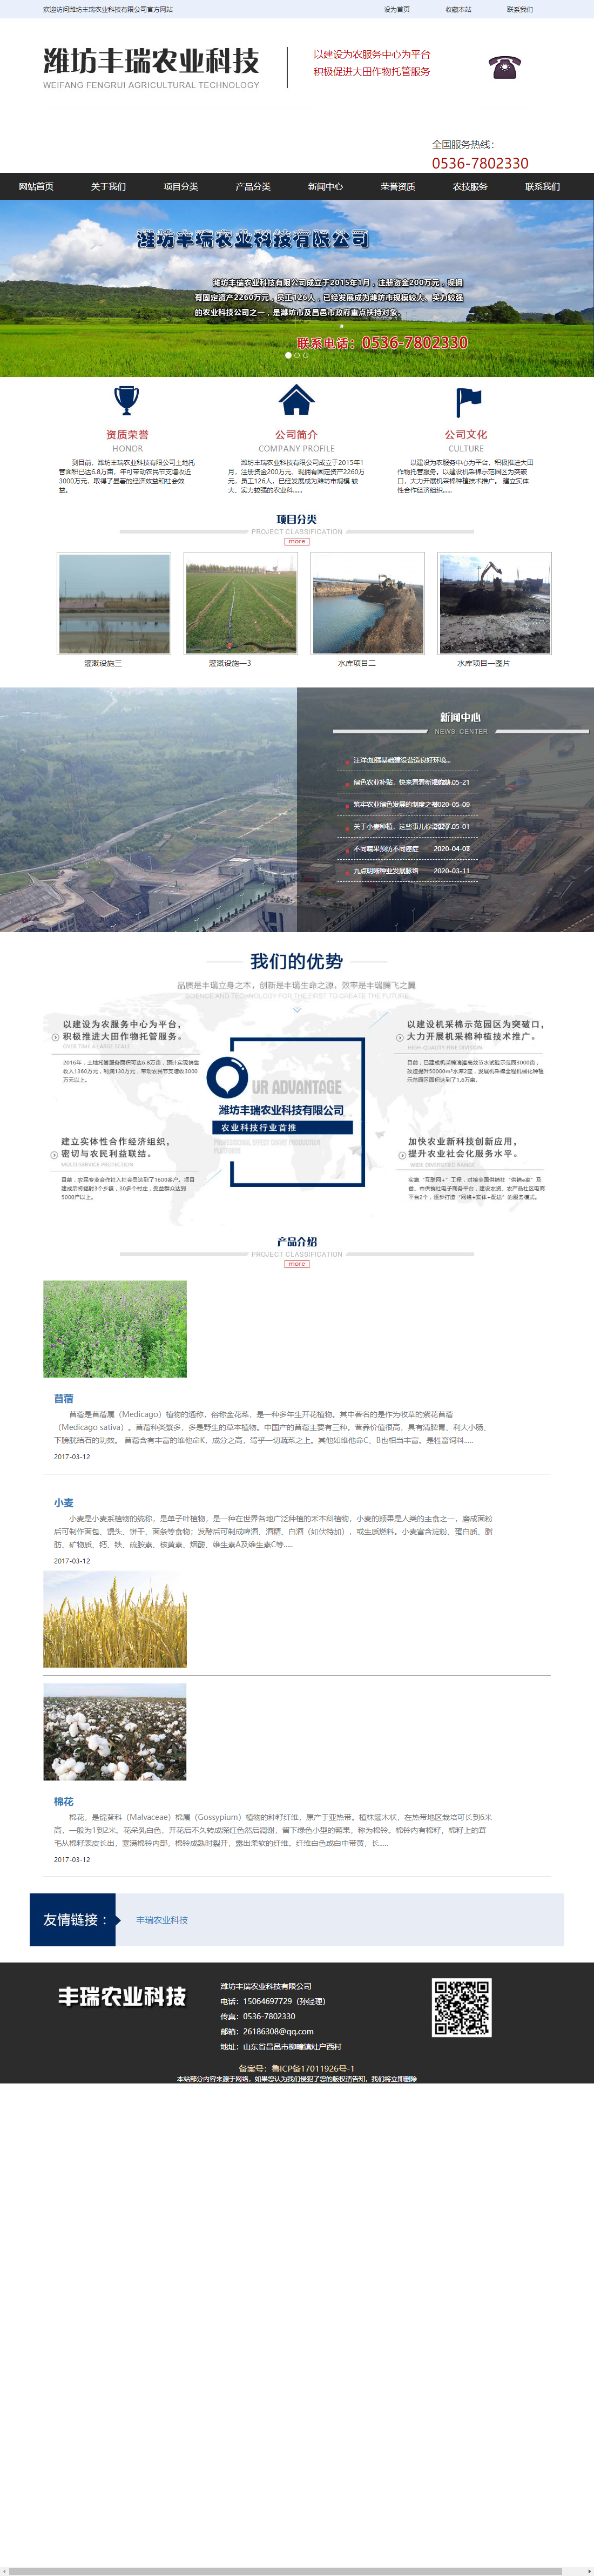 潍坊丰瑞农业科技有限公司网站案例